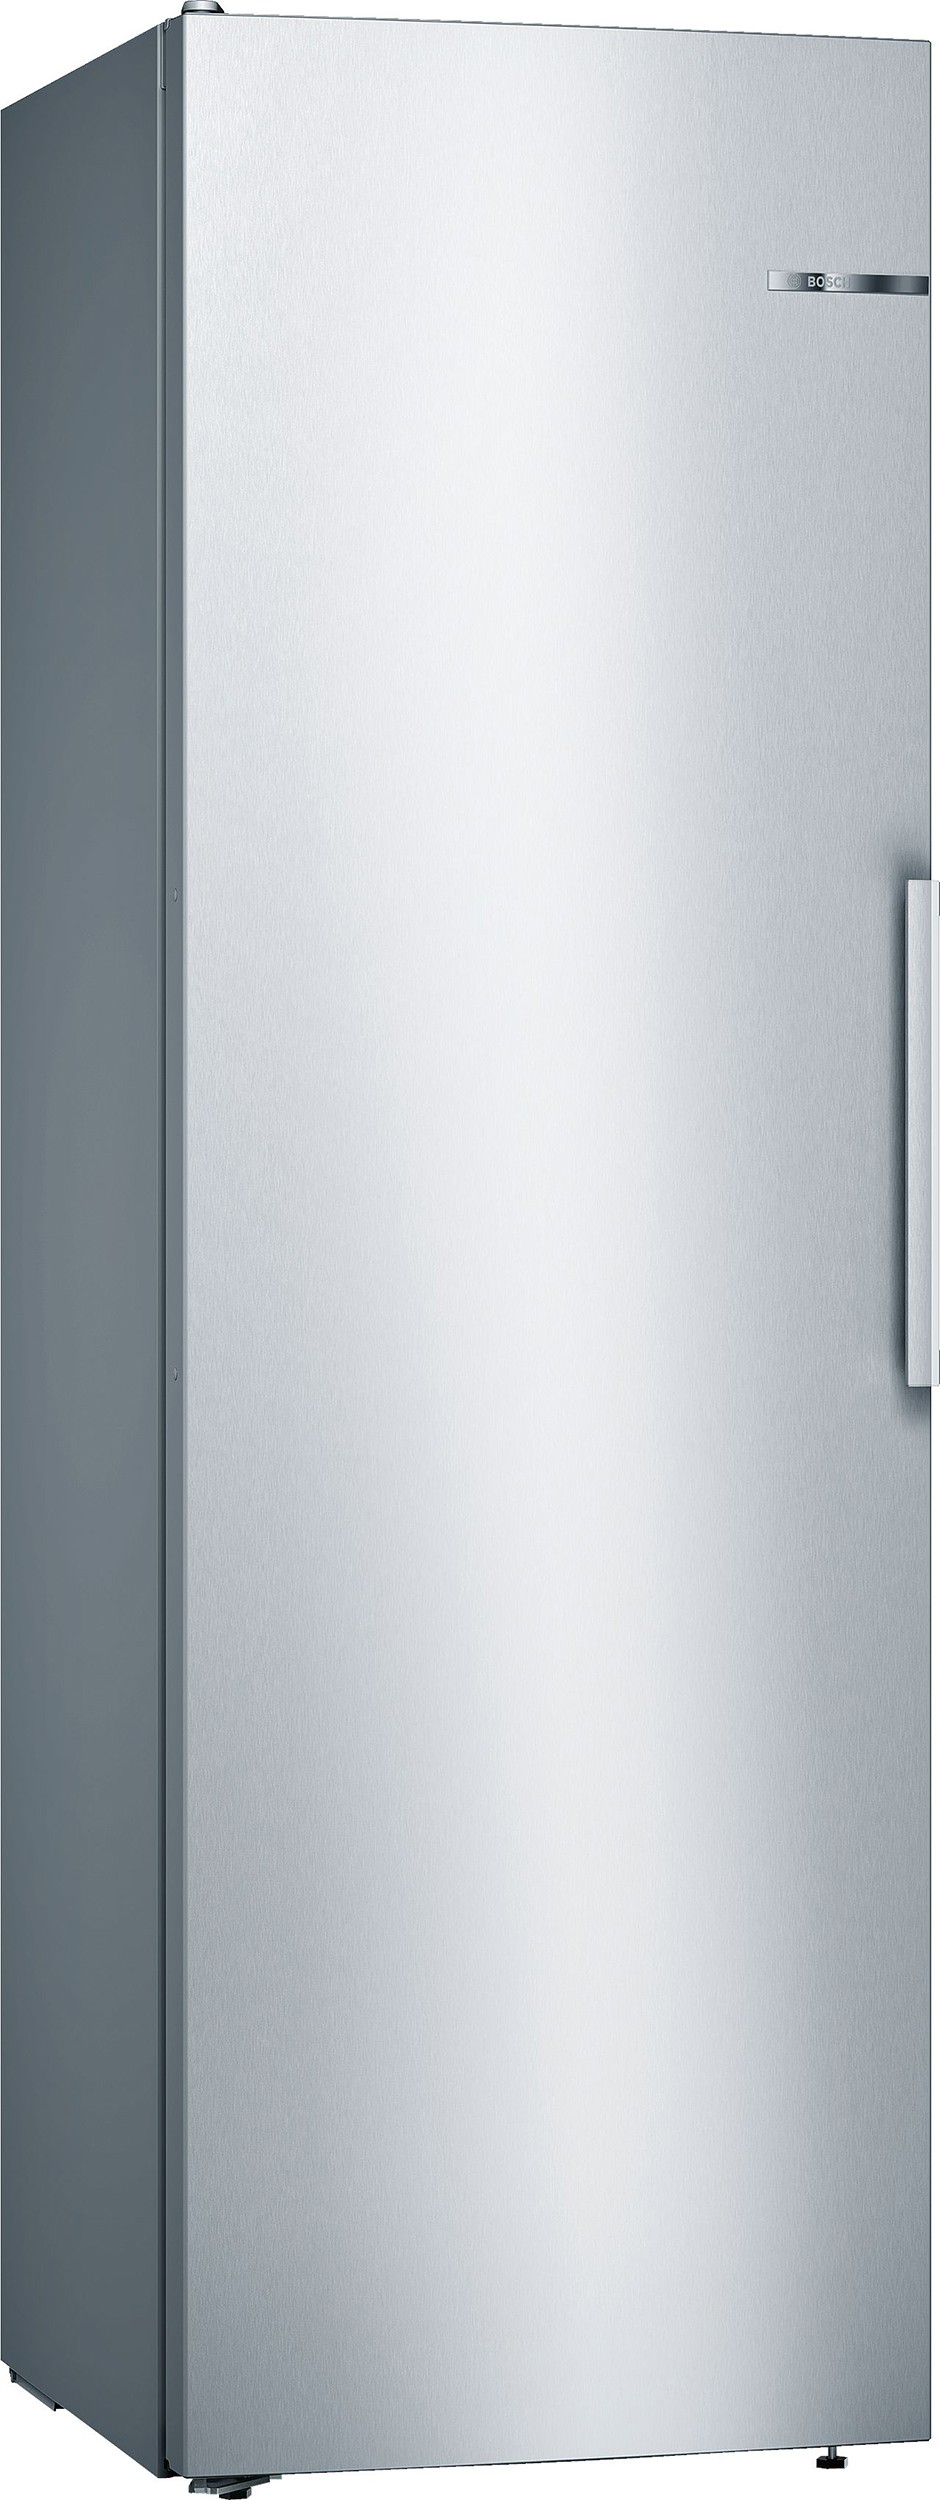 Réfrigérateur 1 porte KSV36VLEP